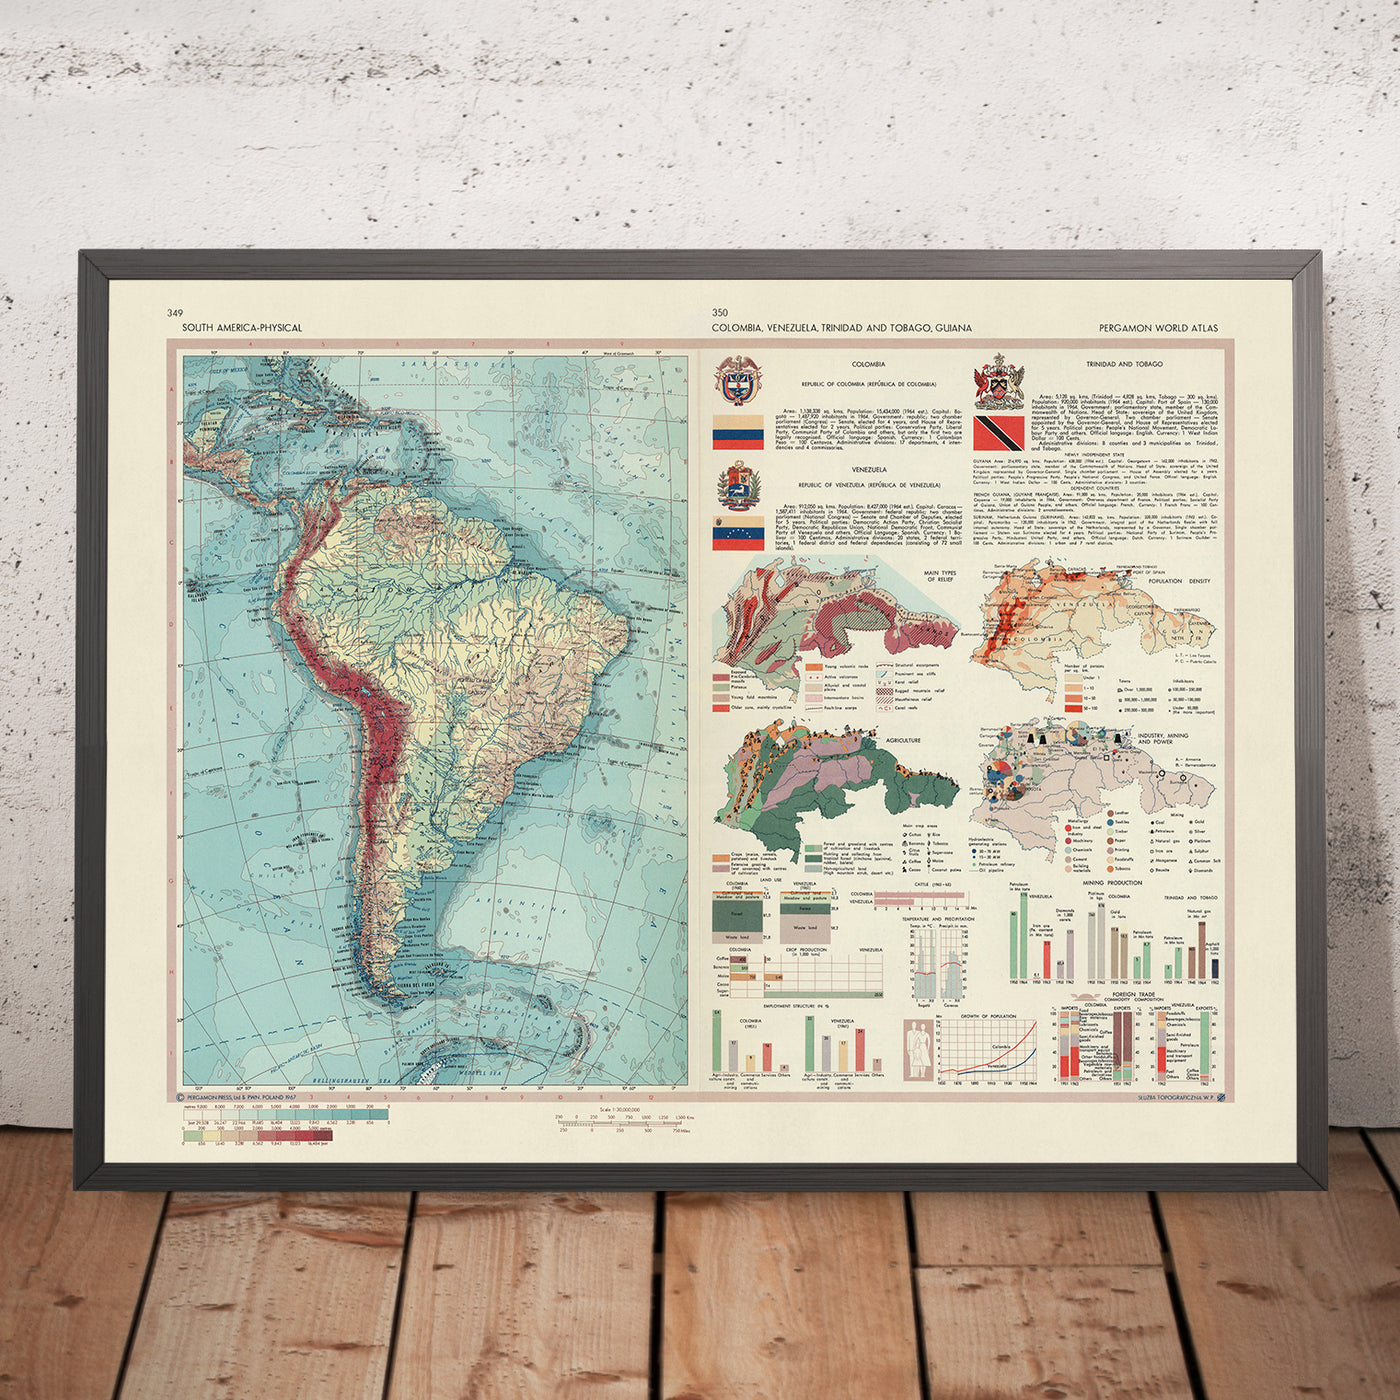 Mapa del Viejo Mundo de América del Sur por el Servicio de Topografía del Ejército Polaco, 1967: Mapa físico y político detallado con elementos temáticos